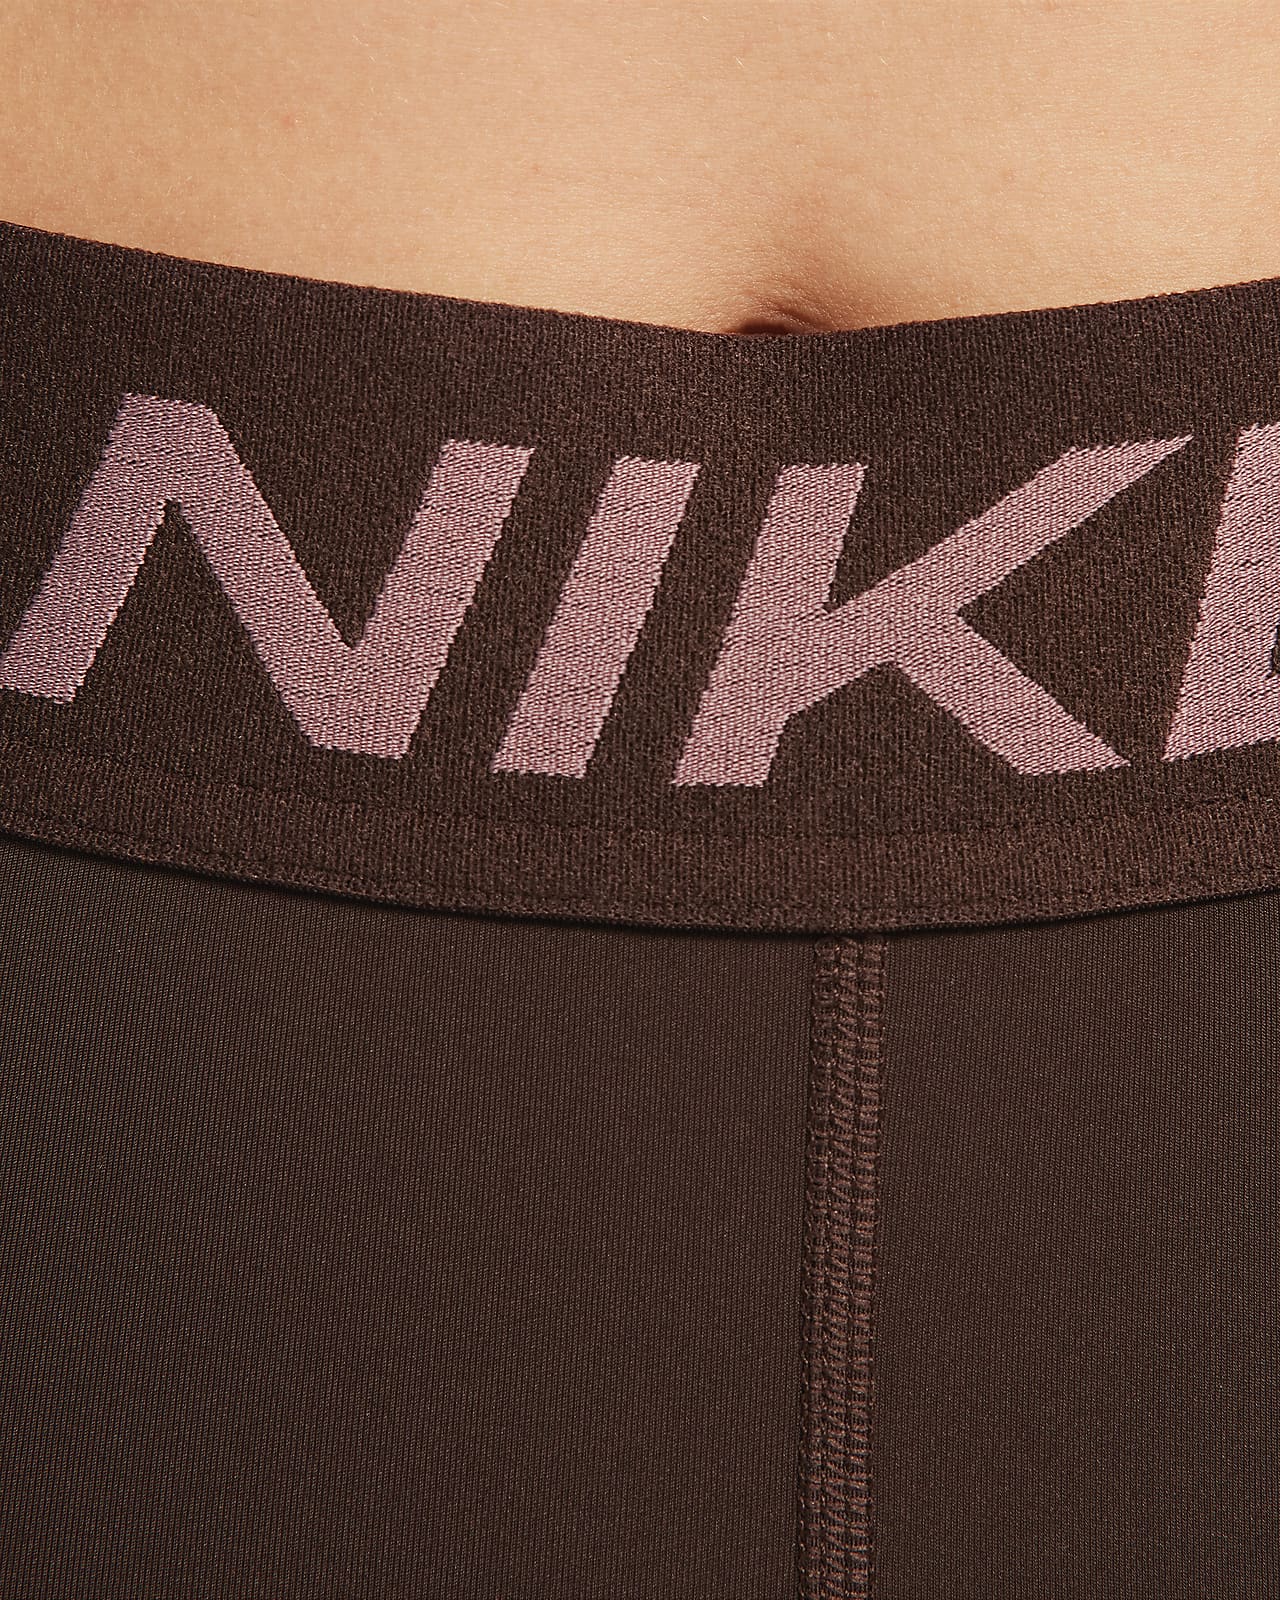 Women's Nike Pro Clothing. Nike CZ